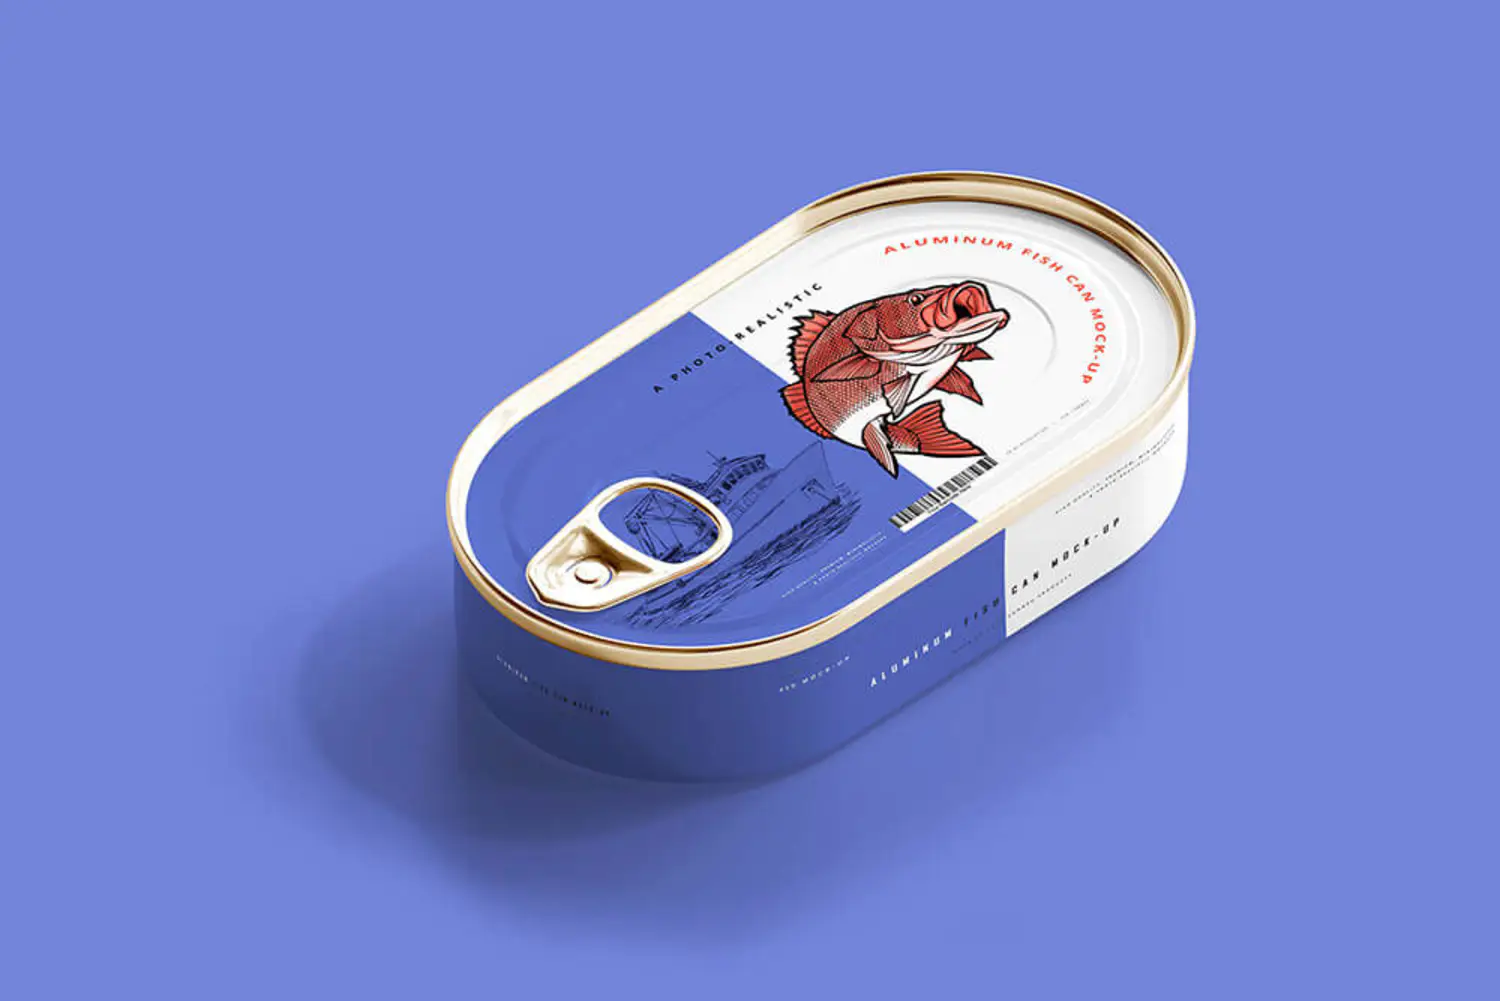 47 铝制沙丁鱼罐头包装设计样机 (psd)Aluminum Fish Can Mockup 6206869